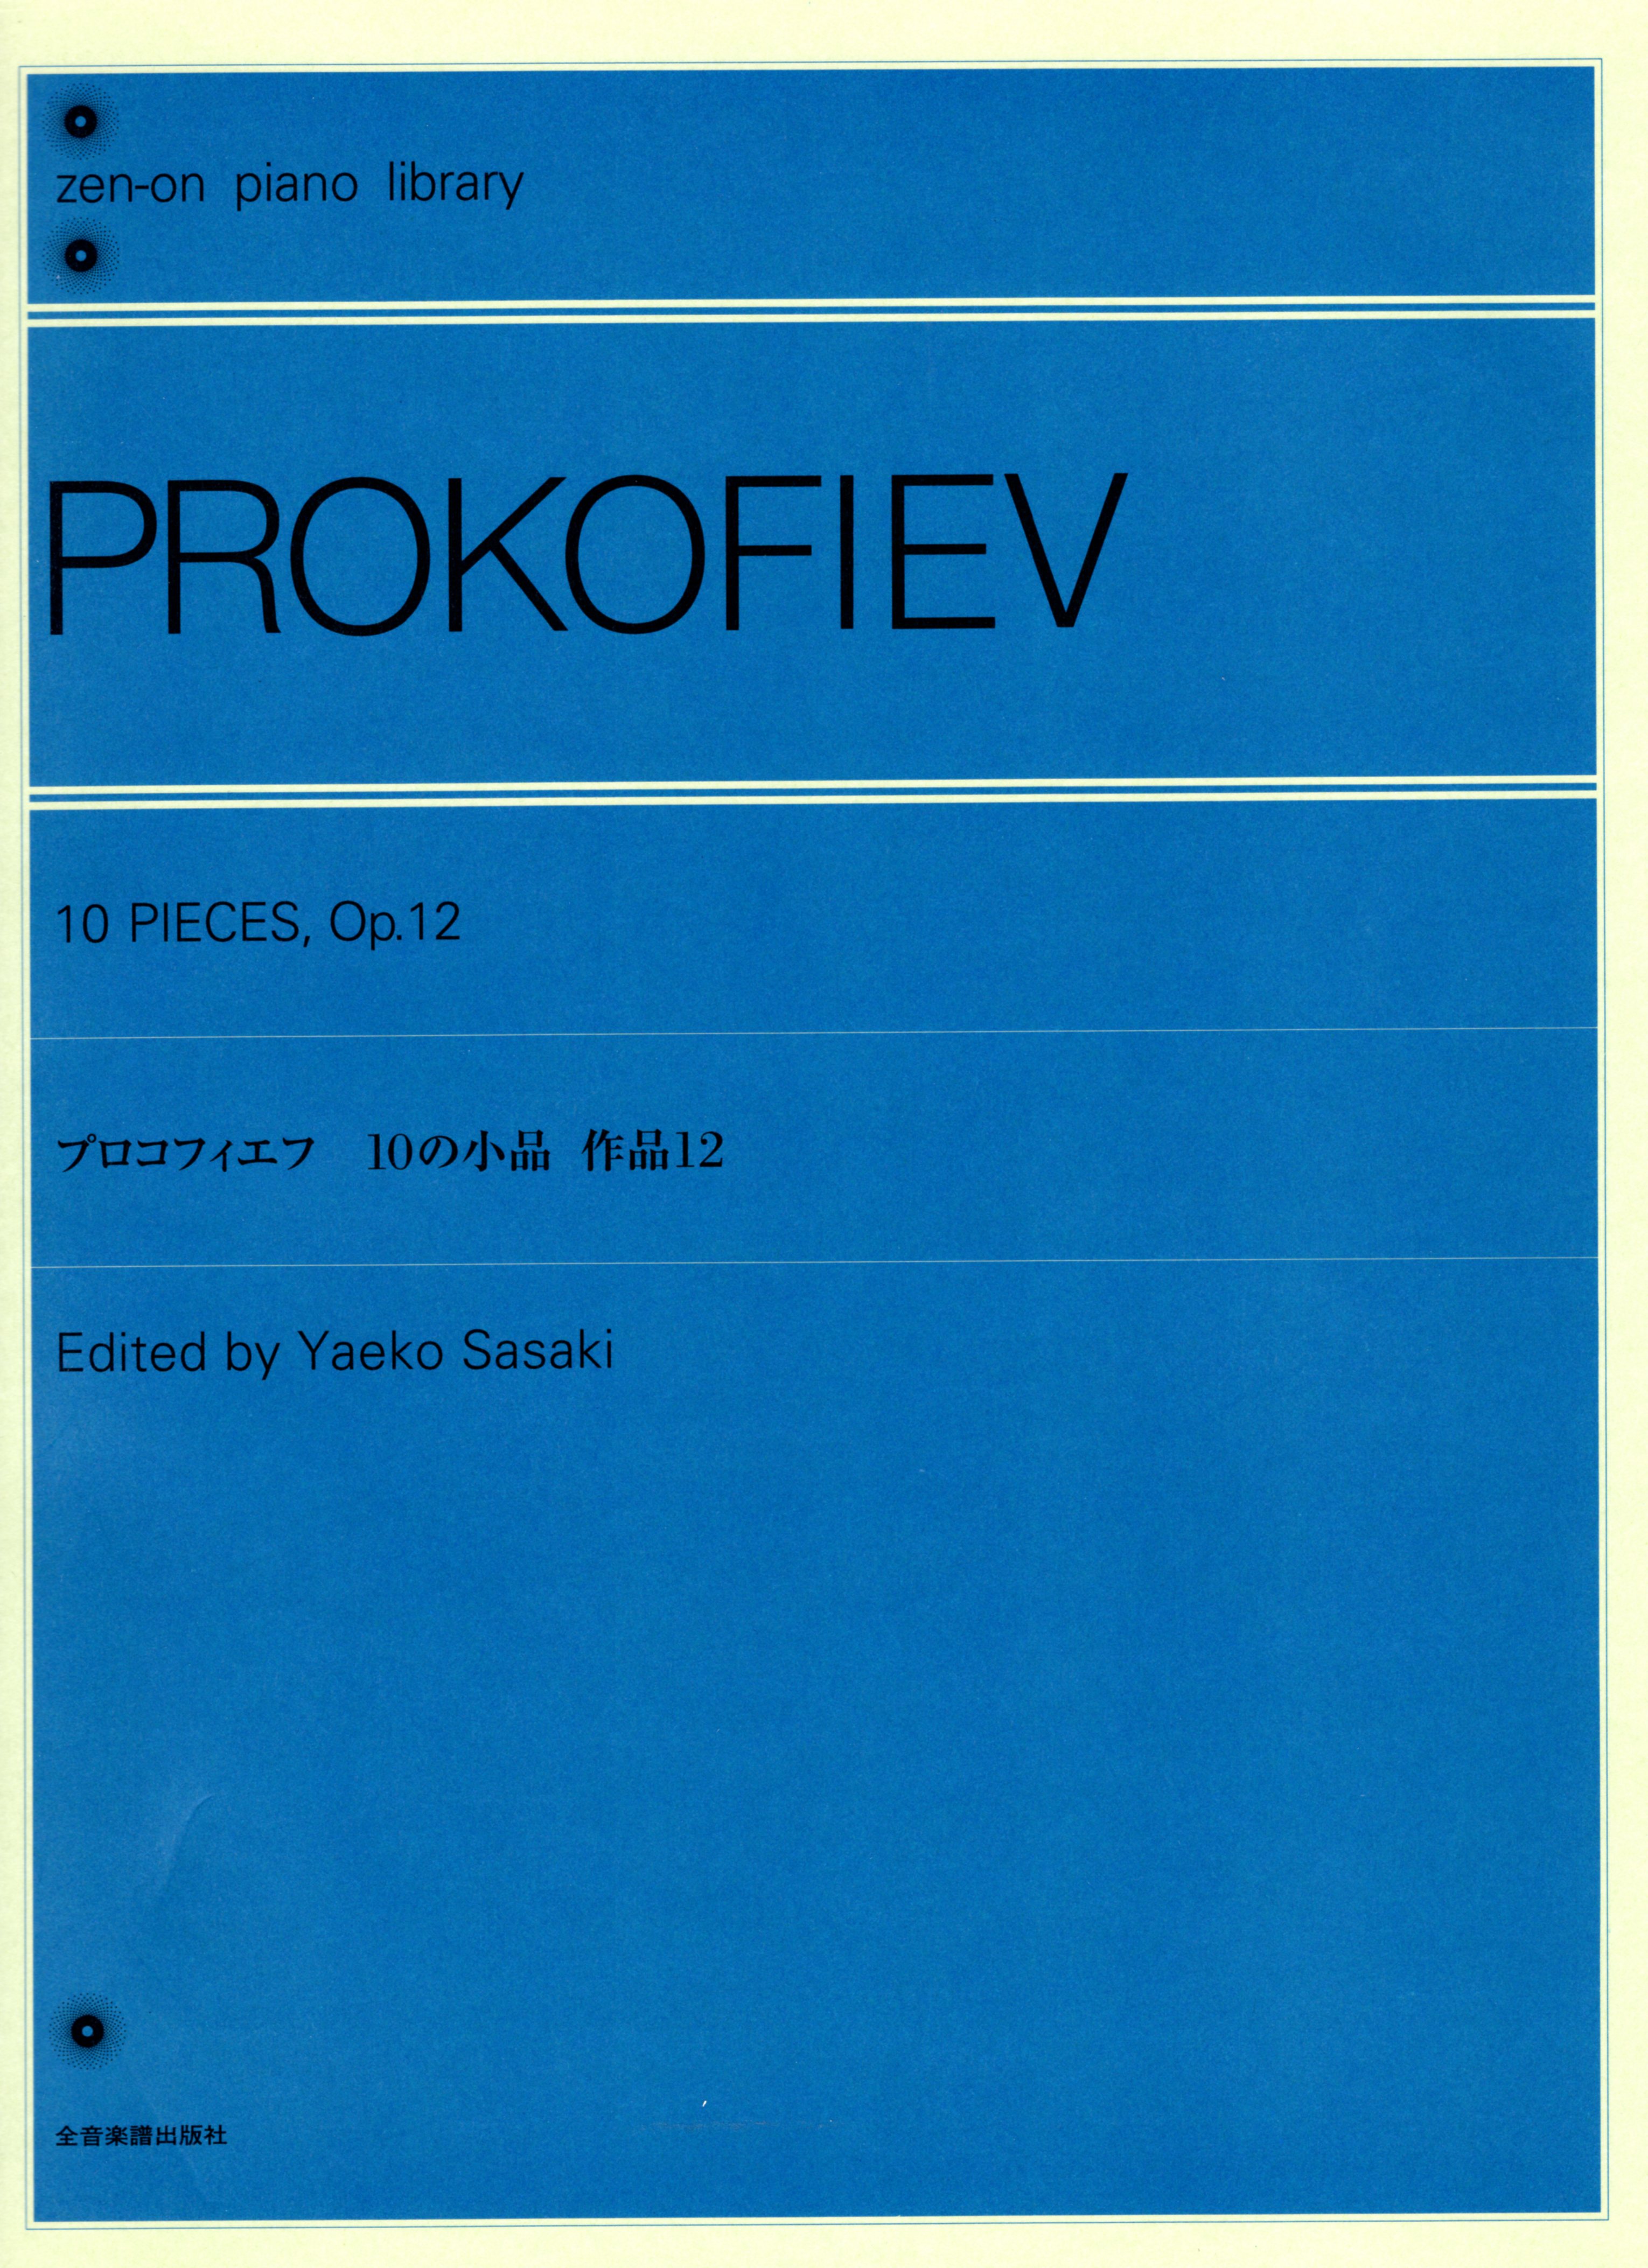 【獨奏鋼琴樂譜】普羅高菲夫10首小品作品12 PROKOFIEV 10 Pieces, Op.12